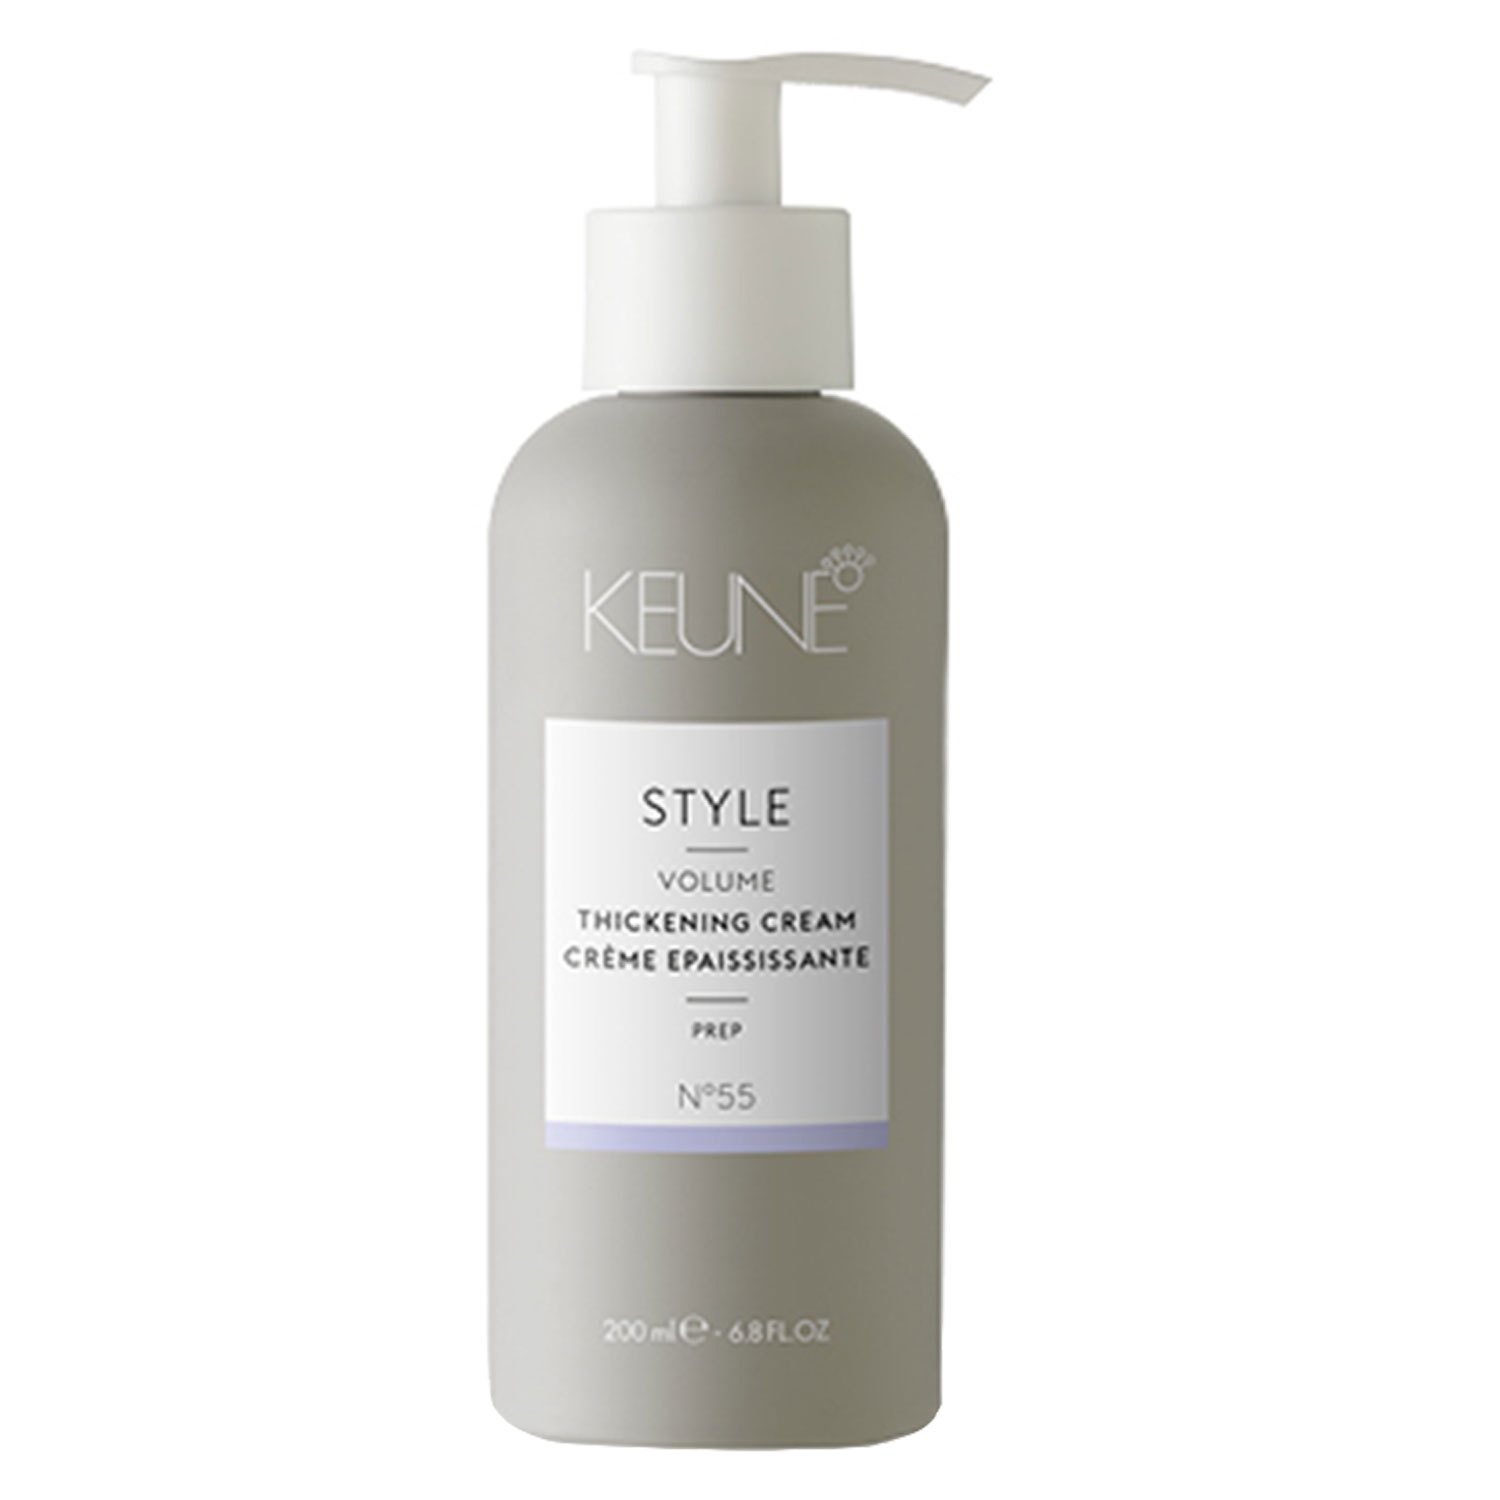 Produktbild von Keune Style - Thickening Cream